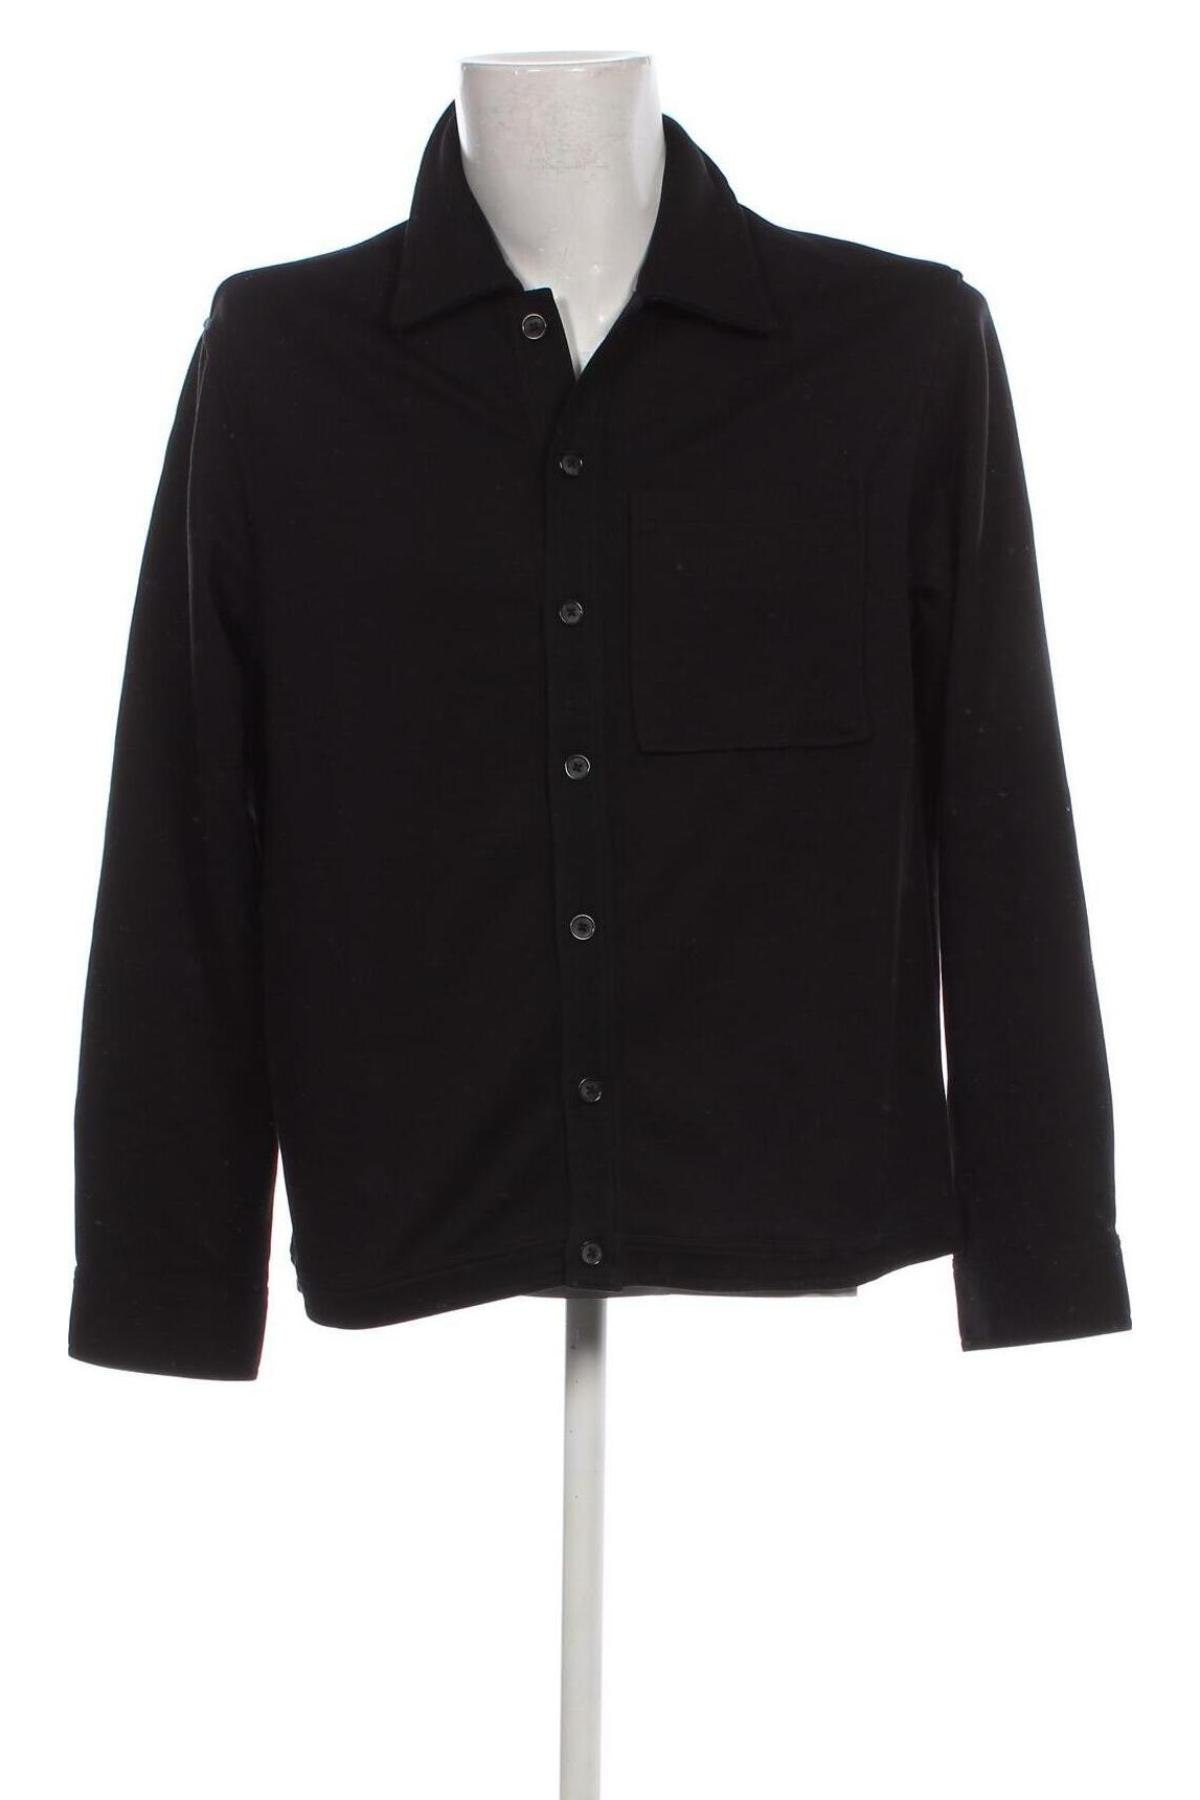 Ανδρικό πουκάμισο Dan Fox X About You, Μέγεθος M, Χρώμα Μαύρο, Τιμή 23,81 €